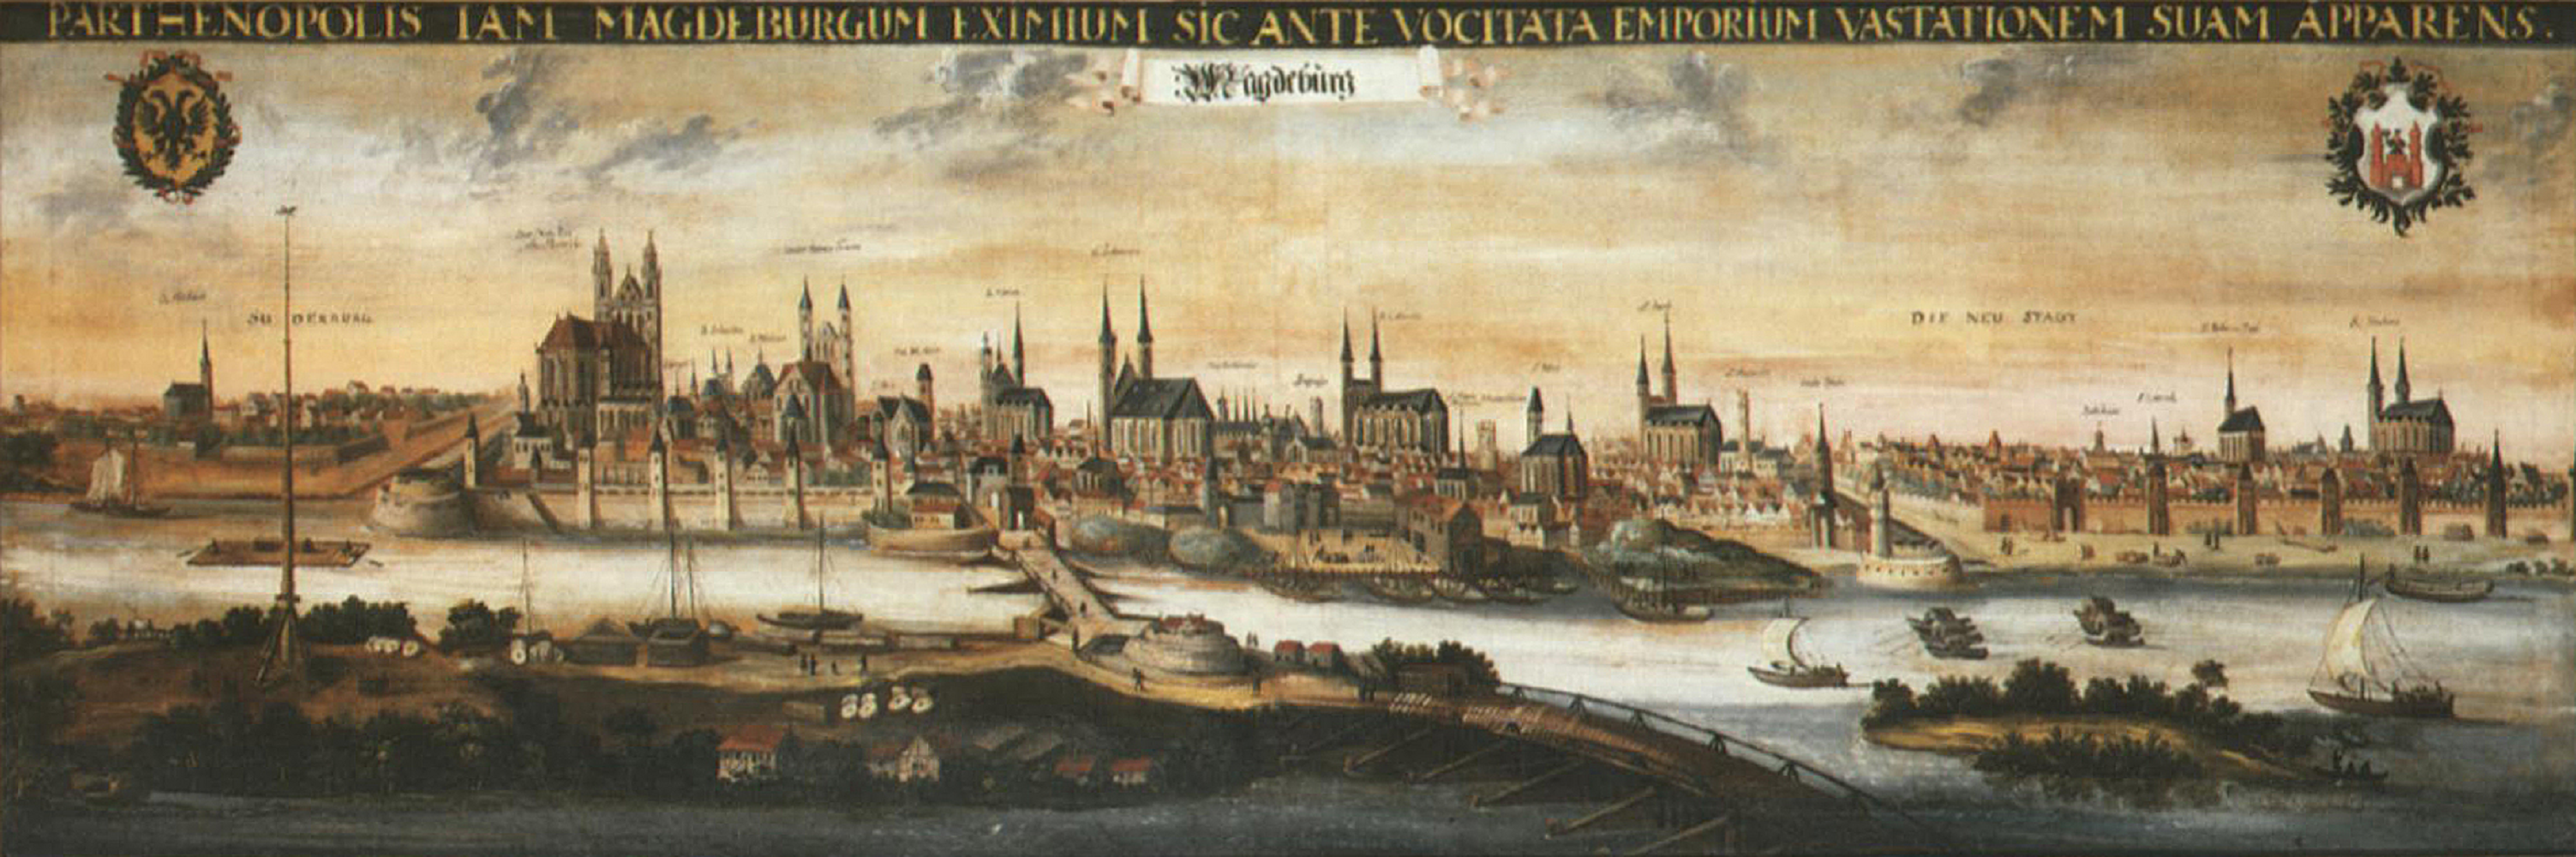 Las tropas de Felipe IV asesinan a 20.000 civiles en Magdeburgo